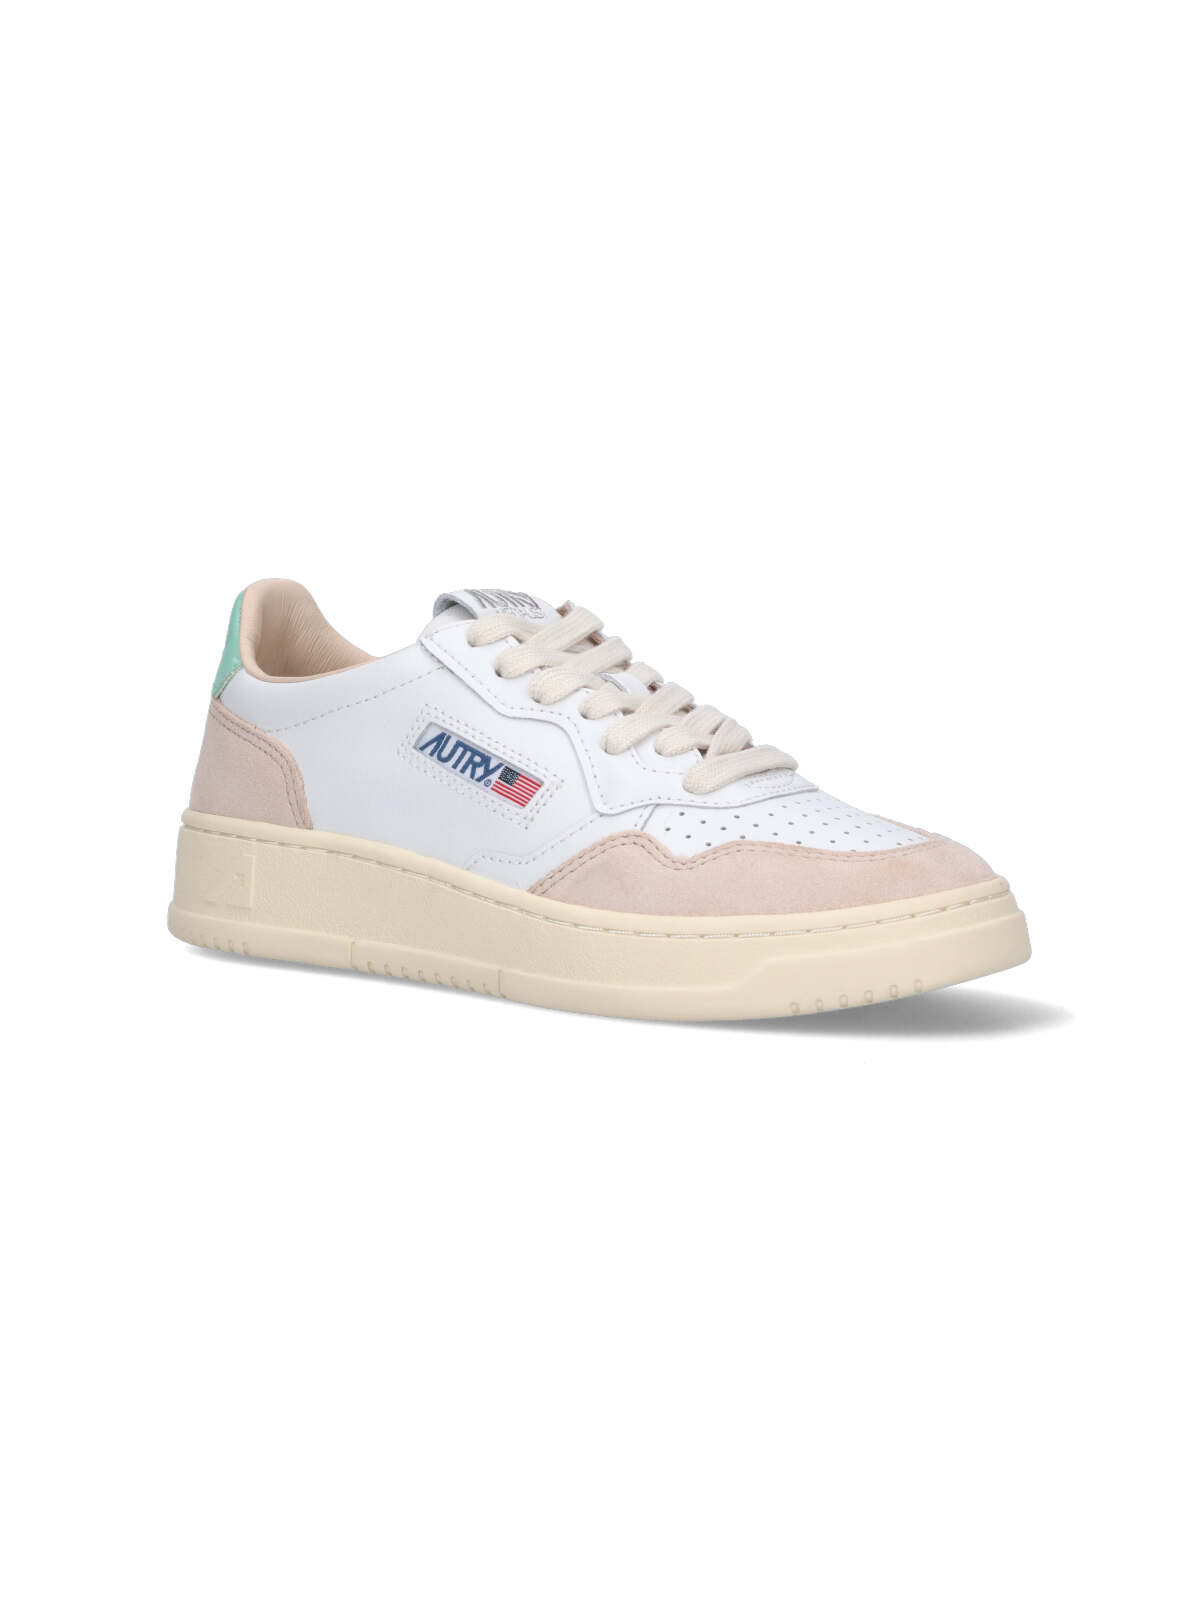 Shop Autry Low Medalist 01 Sneakers In White/mistgrn